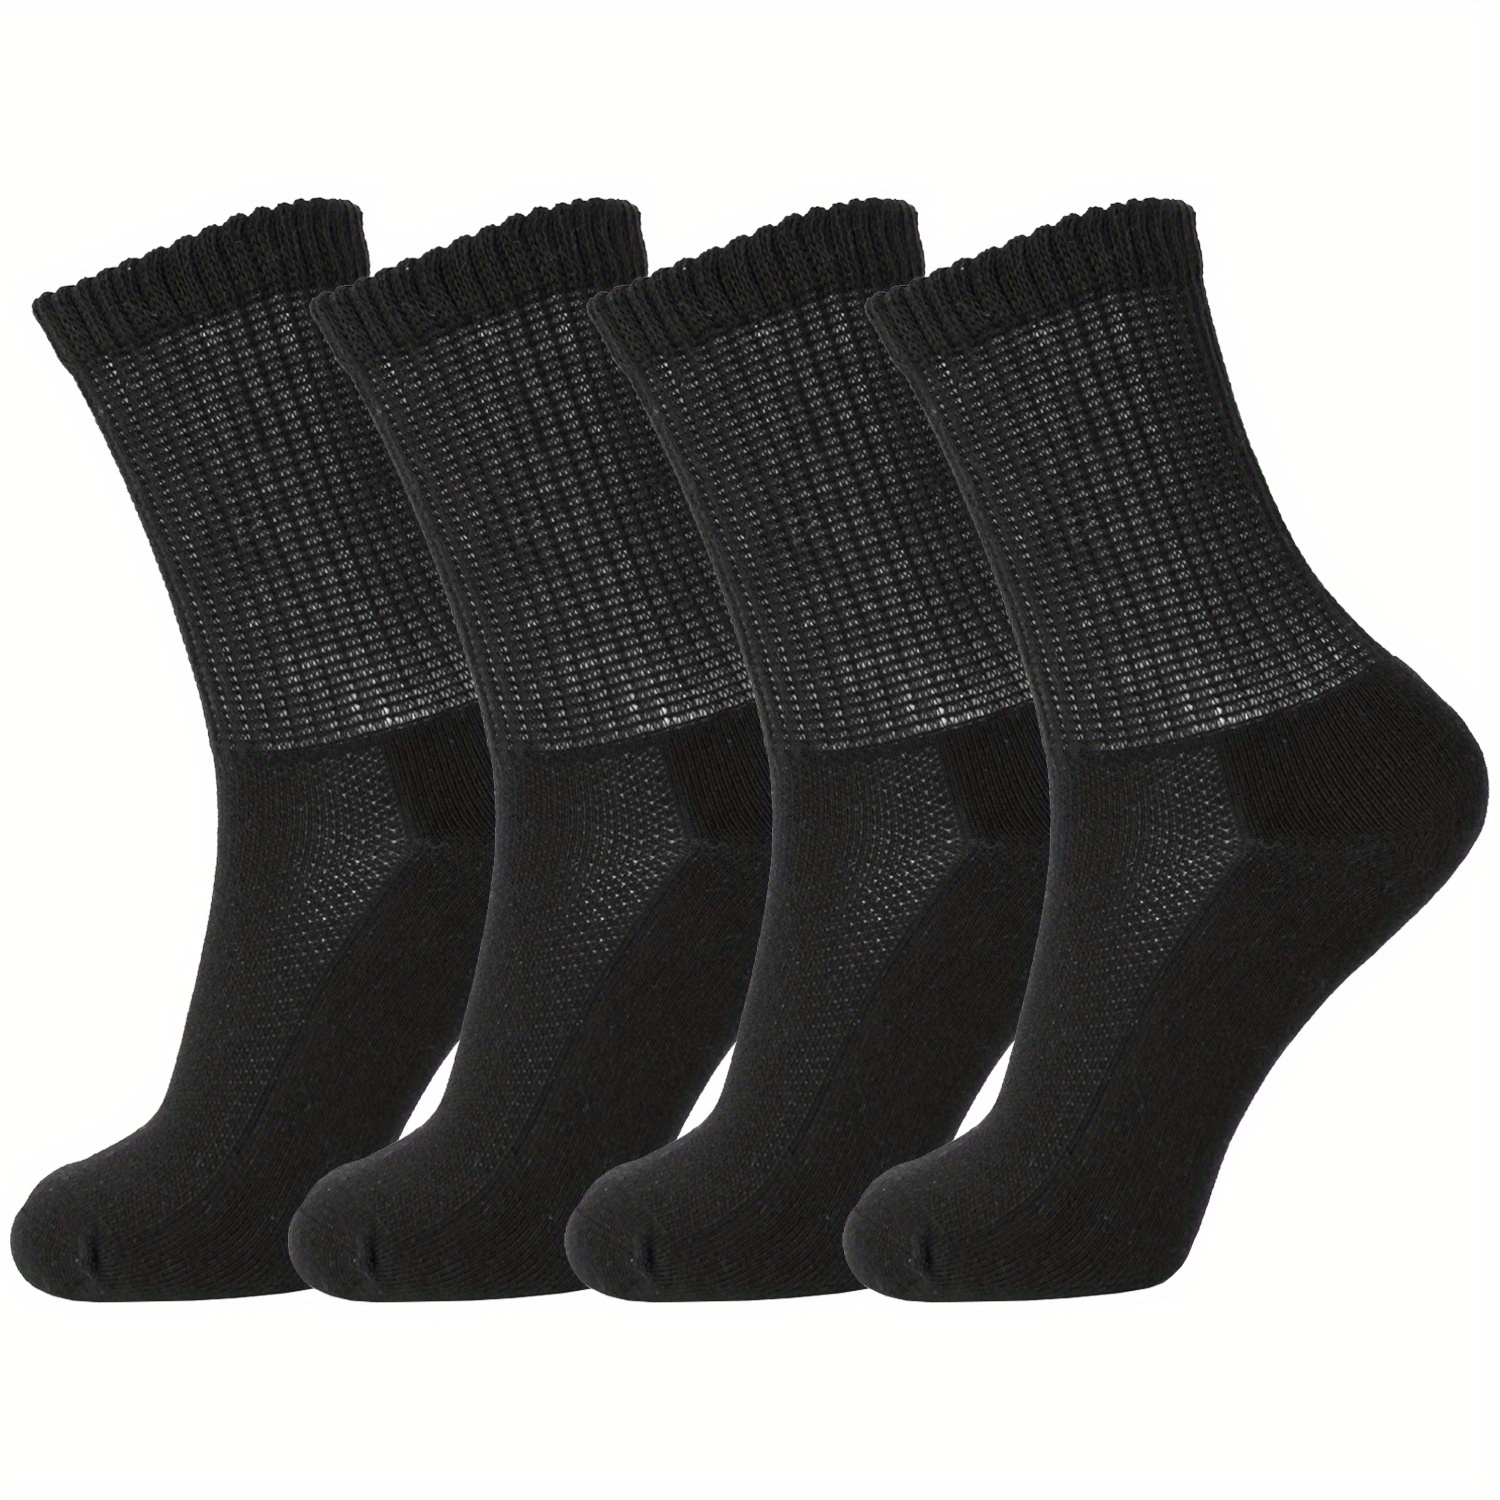 Calcetines de tobillo diabéticos para hombres y mujeres con empuñaduras, 6  pares de calcetines diabéticos antideslizantes de 1/4 de longitud ancha